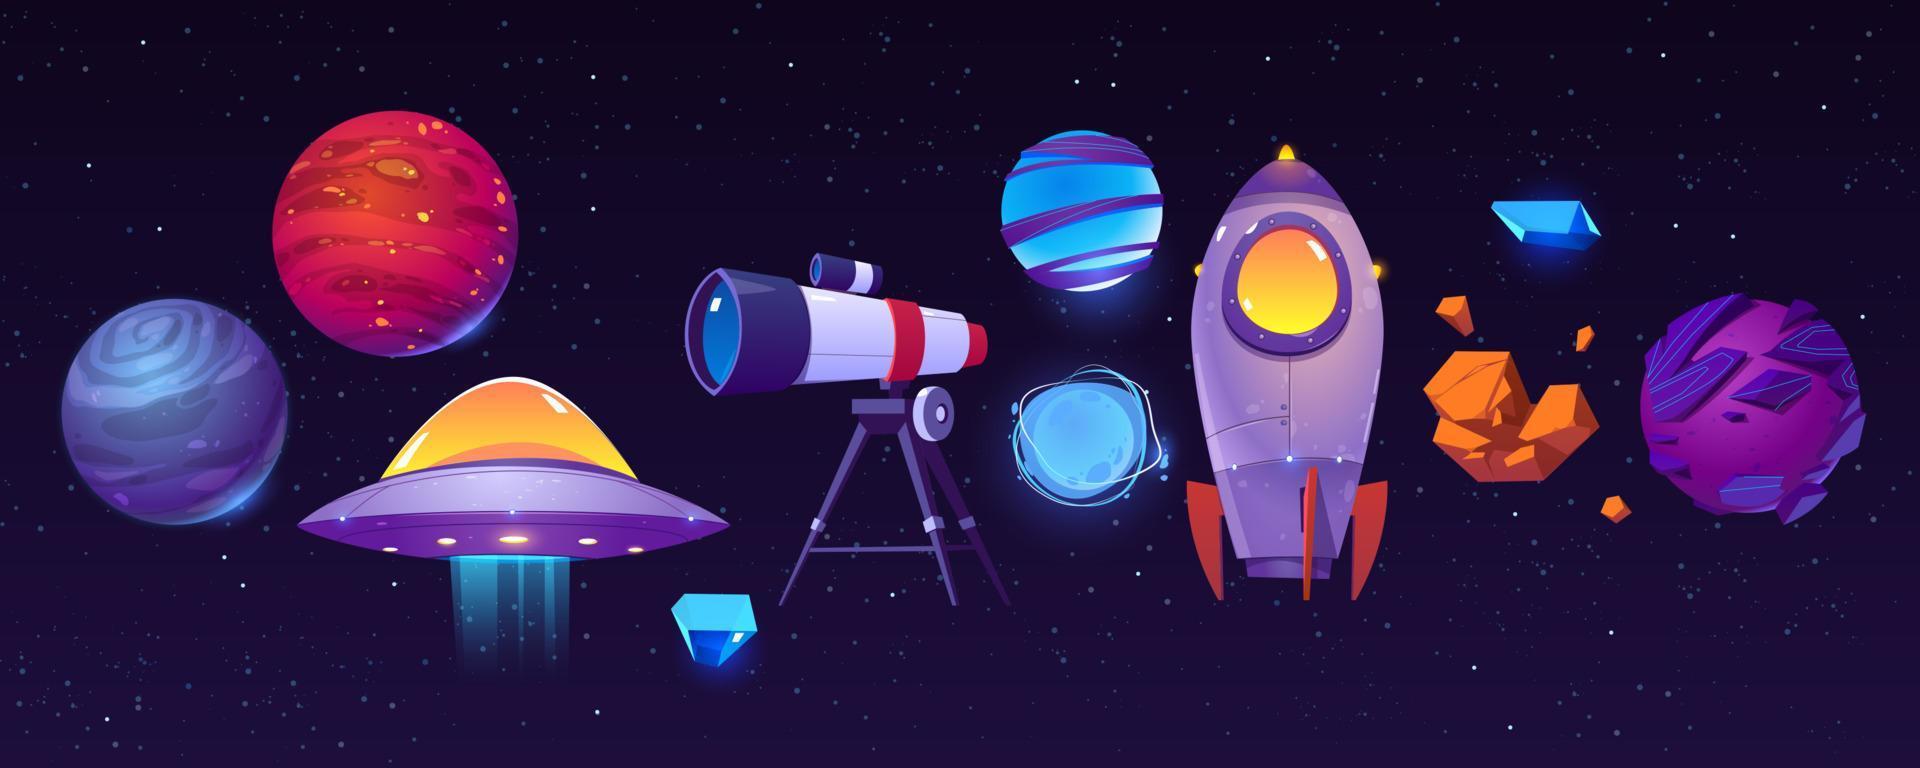 iconos de exploración espacial, planetas, cohetes, telescopio vector